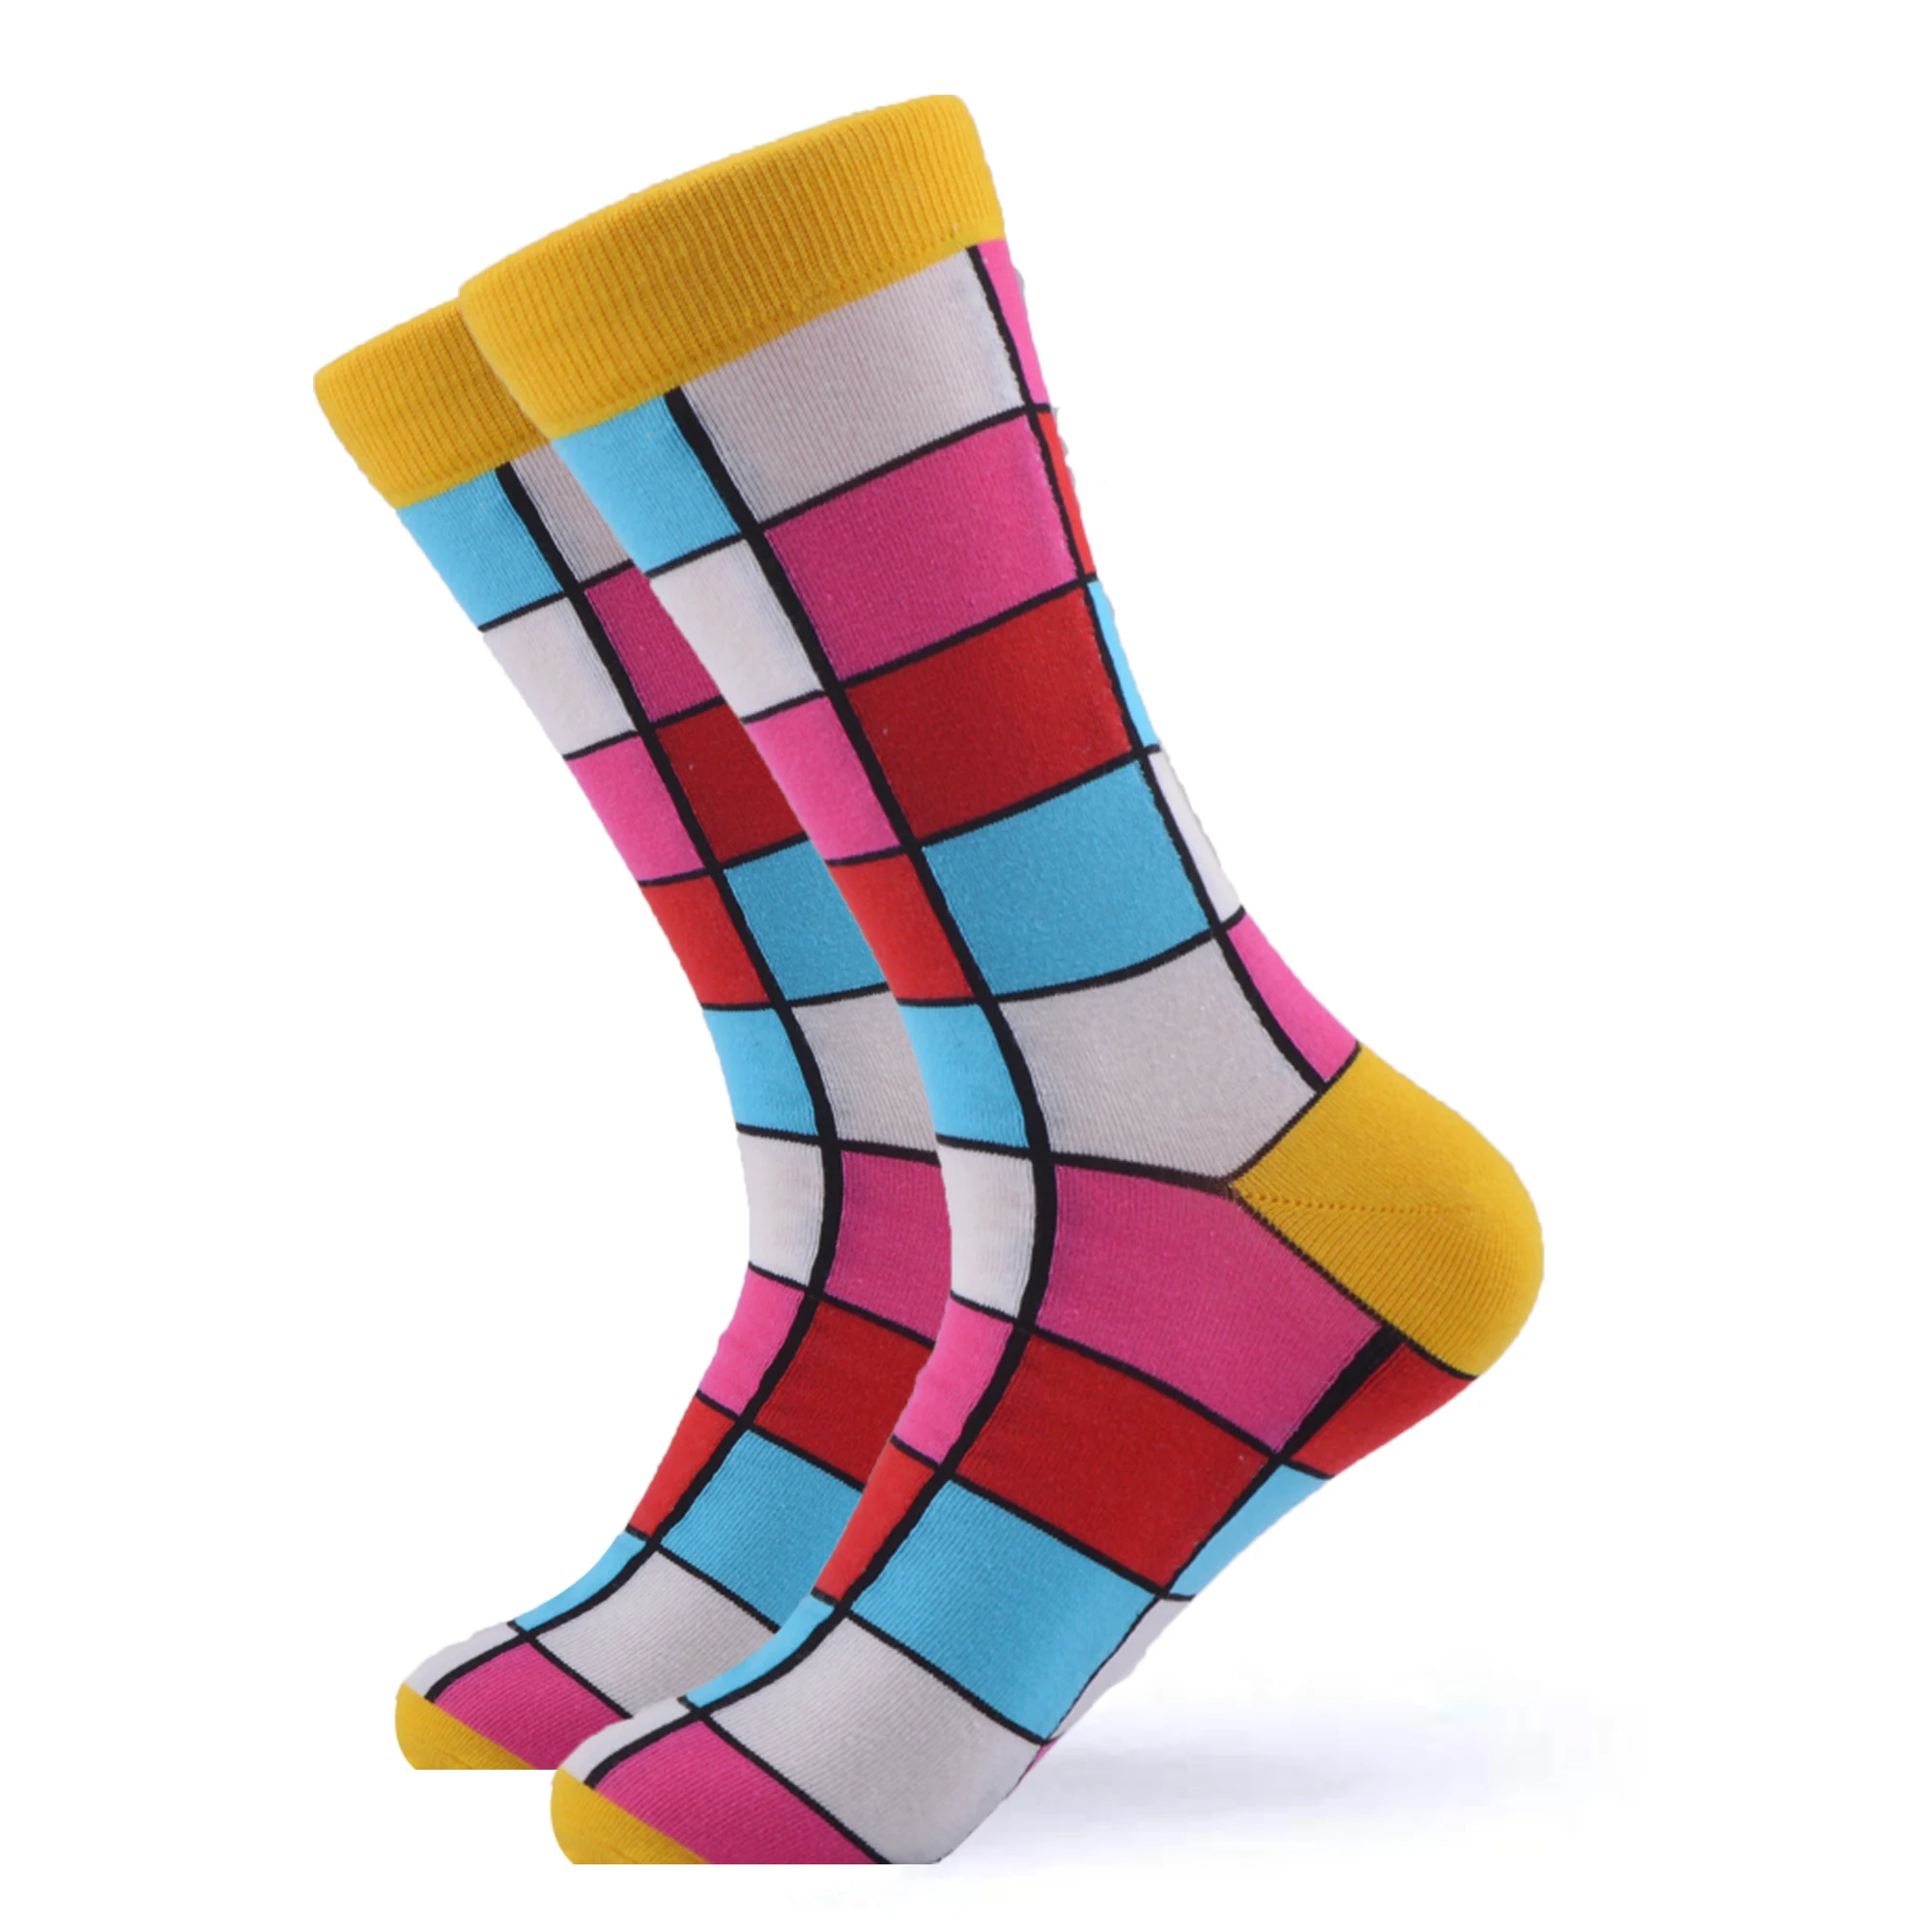 SANZETTI/Новинка года; 1 пара фирменных мужских разноцветных носков из чесаного хлопка; повседневные яркие уличные носки; забавные Свадебные носки в подарок